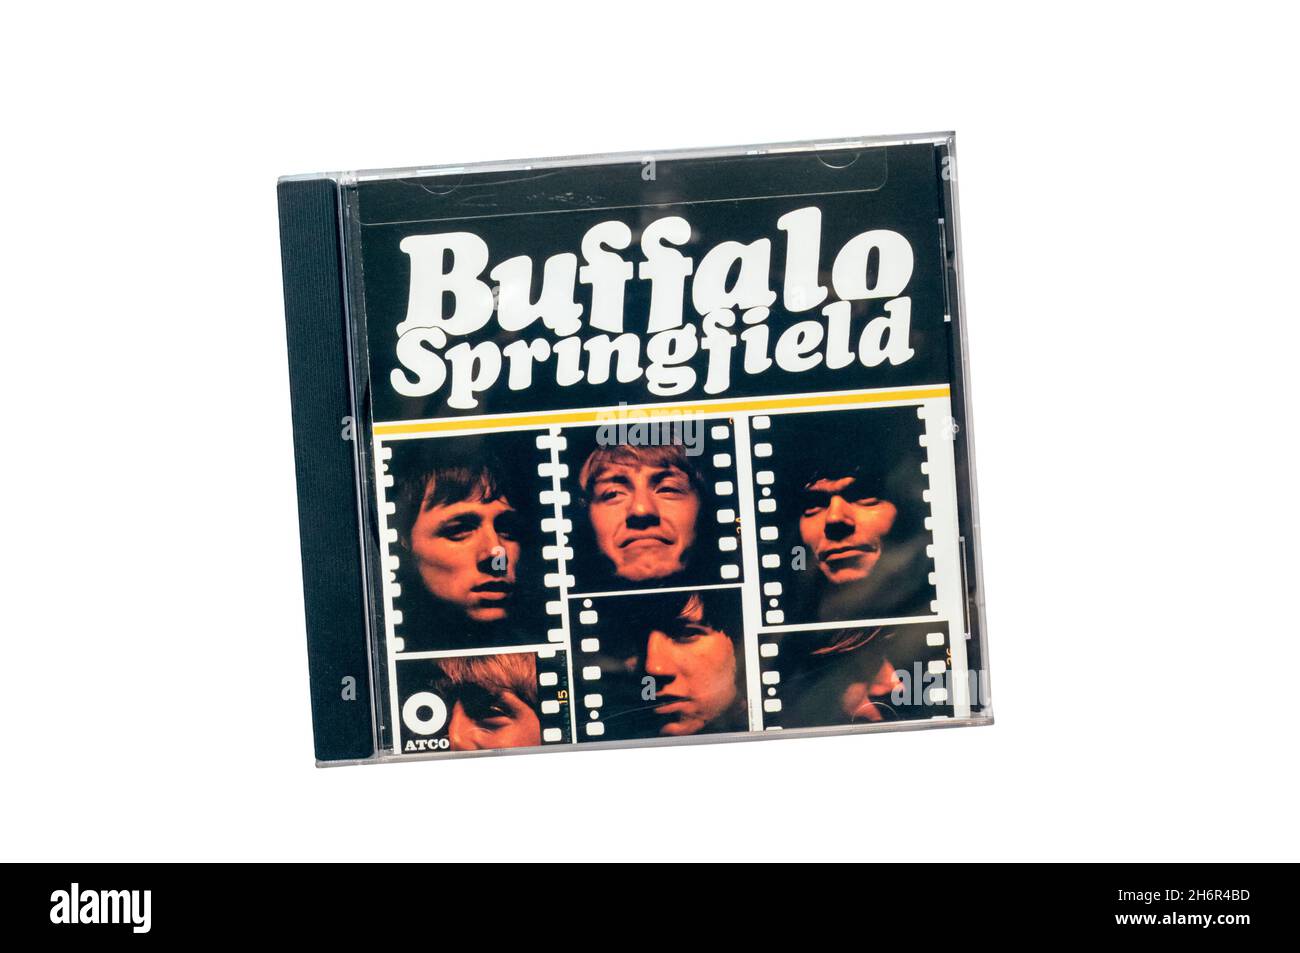 Buffalo Springfield fue el primer álbum homónimo de la banda de rock popular Buffalo Springfield. Publicado en 1966. Foto de stock